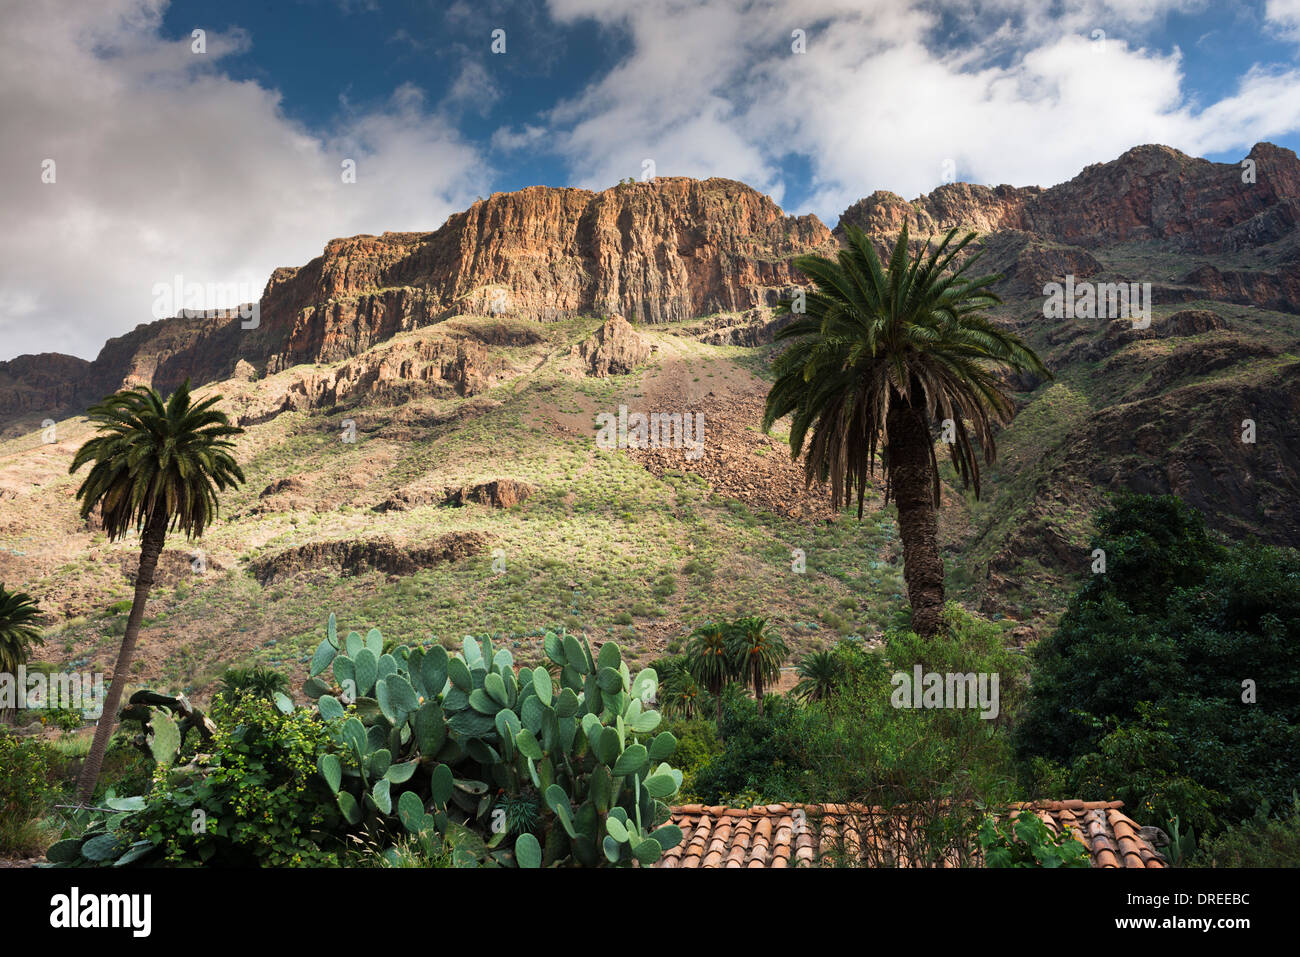 Das Dorf Arteara in den steilen Barranco de Fataga, durch eine dicke Abfolge von Trachyt und Sphäruliten Lavaströme Mauern Stockfoto